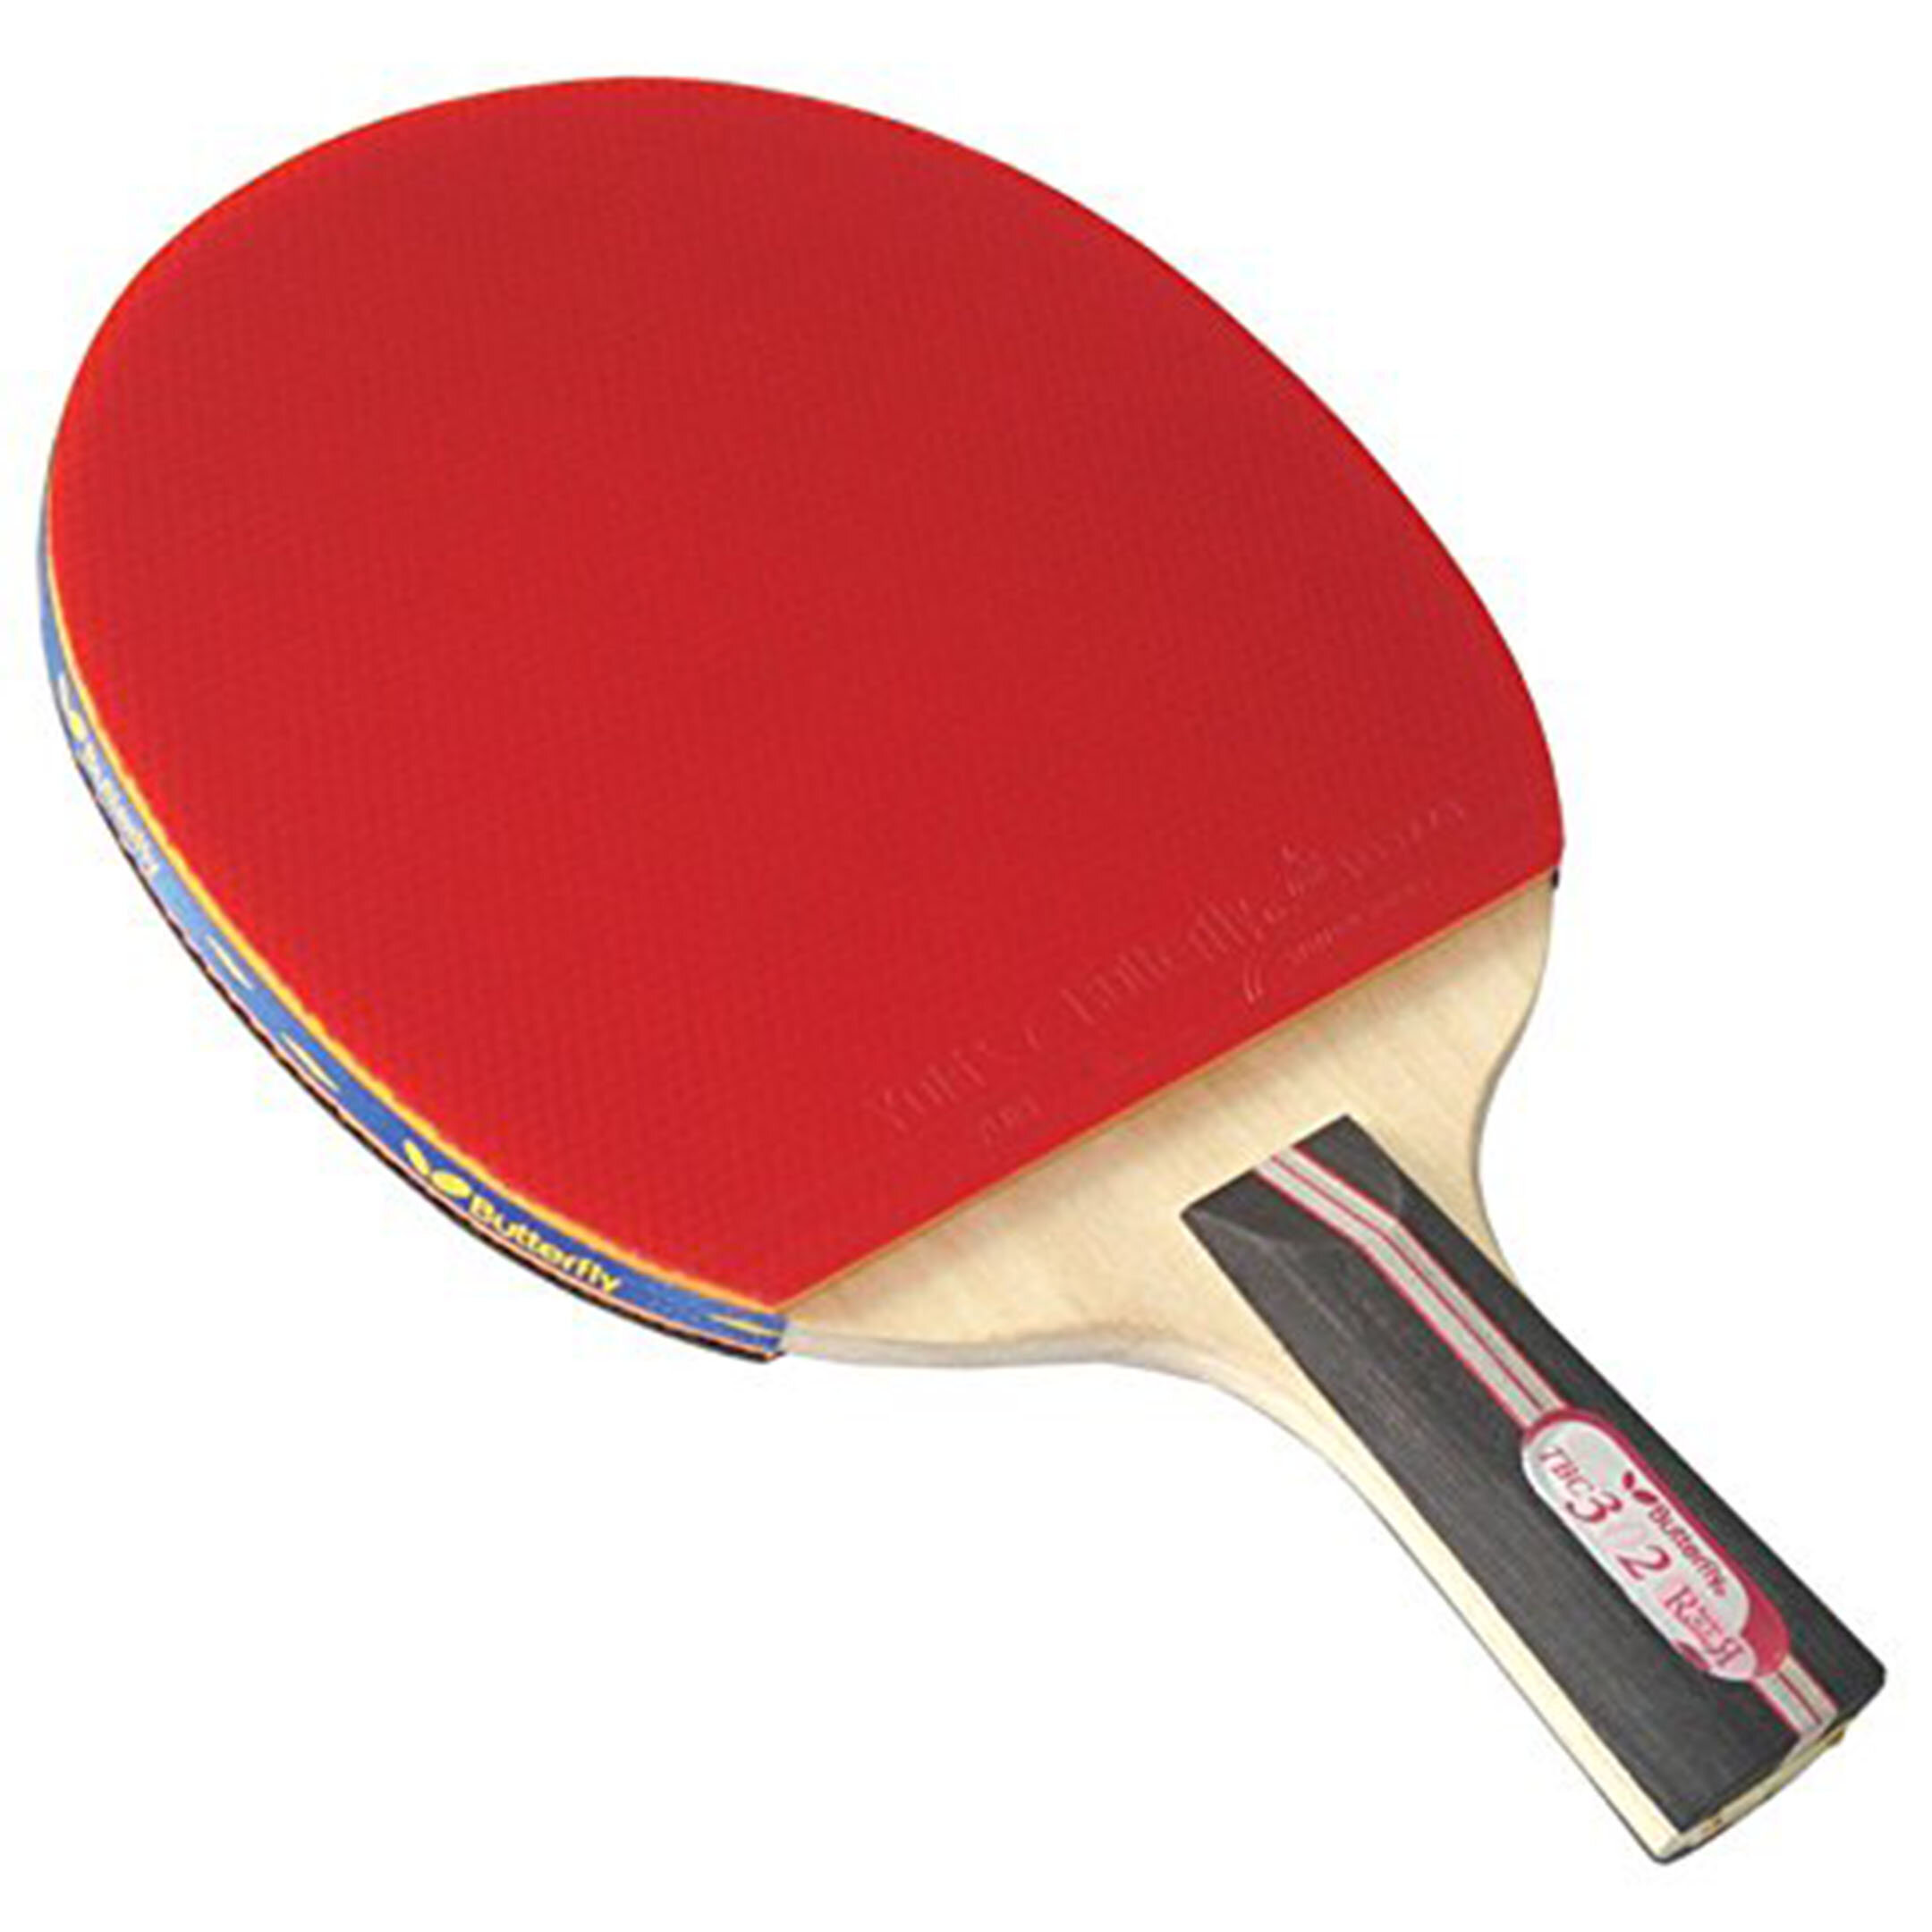 Лучшие накладки для настольного тенниса. Penhold Table Tennis. Пинг-понг. Butterfly настольный теннис. Ракетка для пинг понга с наждачкой.